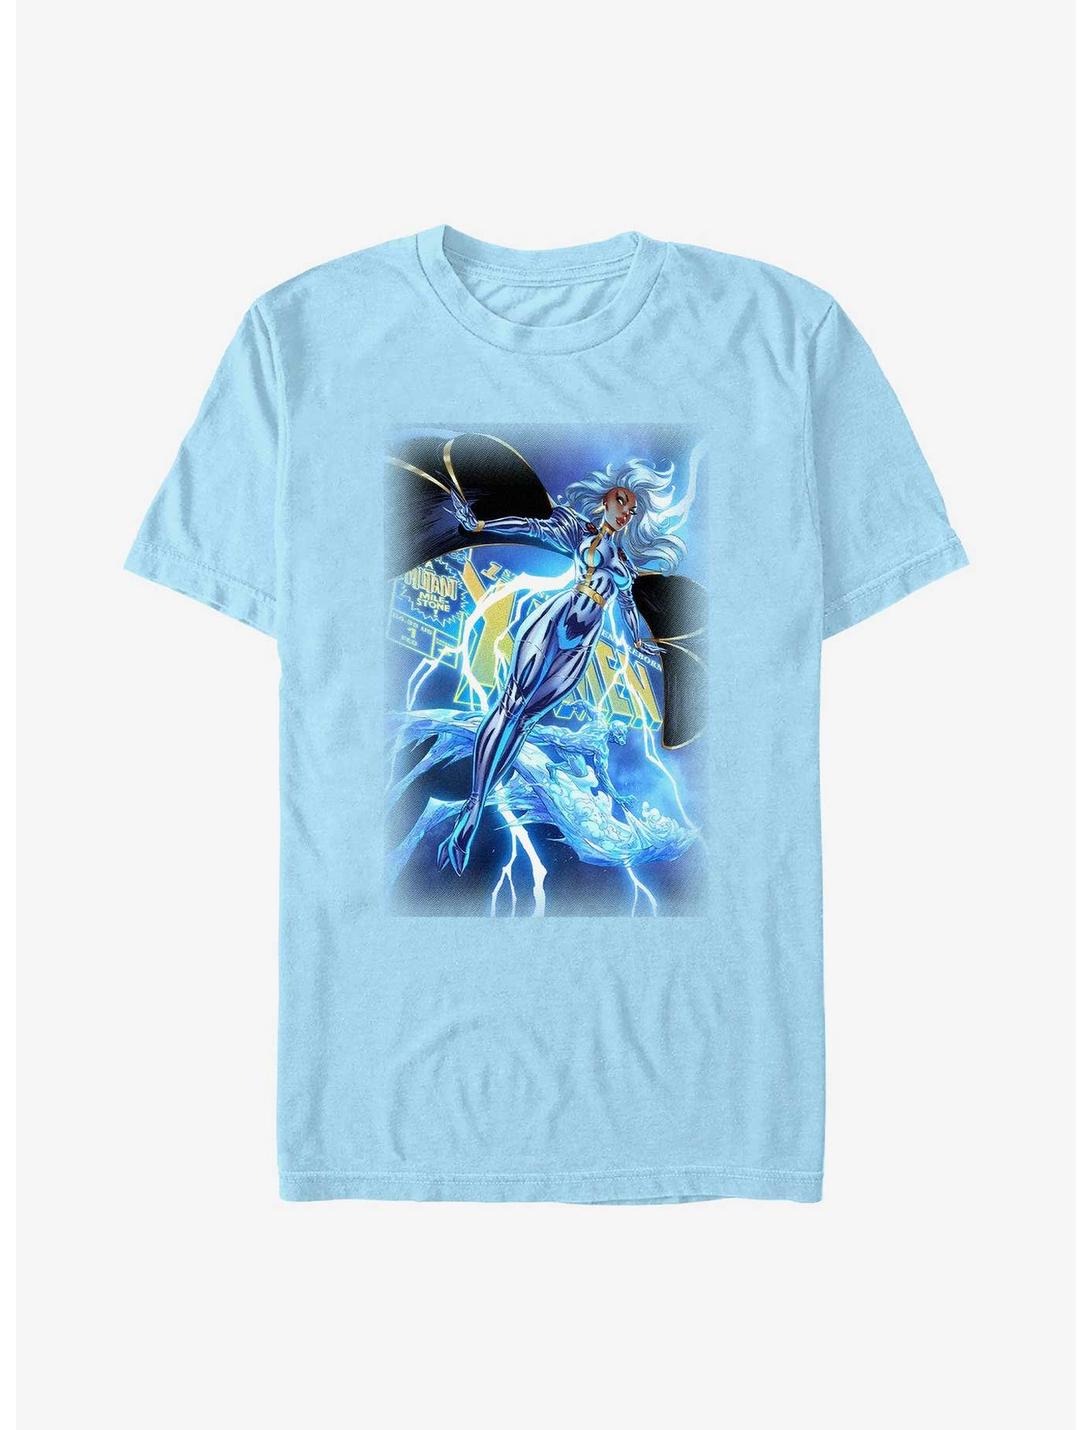 X-Men Uncanny Storm And Ice Man Cover T-Shirt, LT BLUE, hi-res